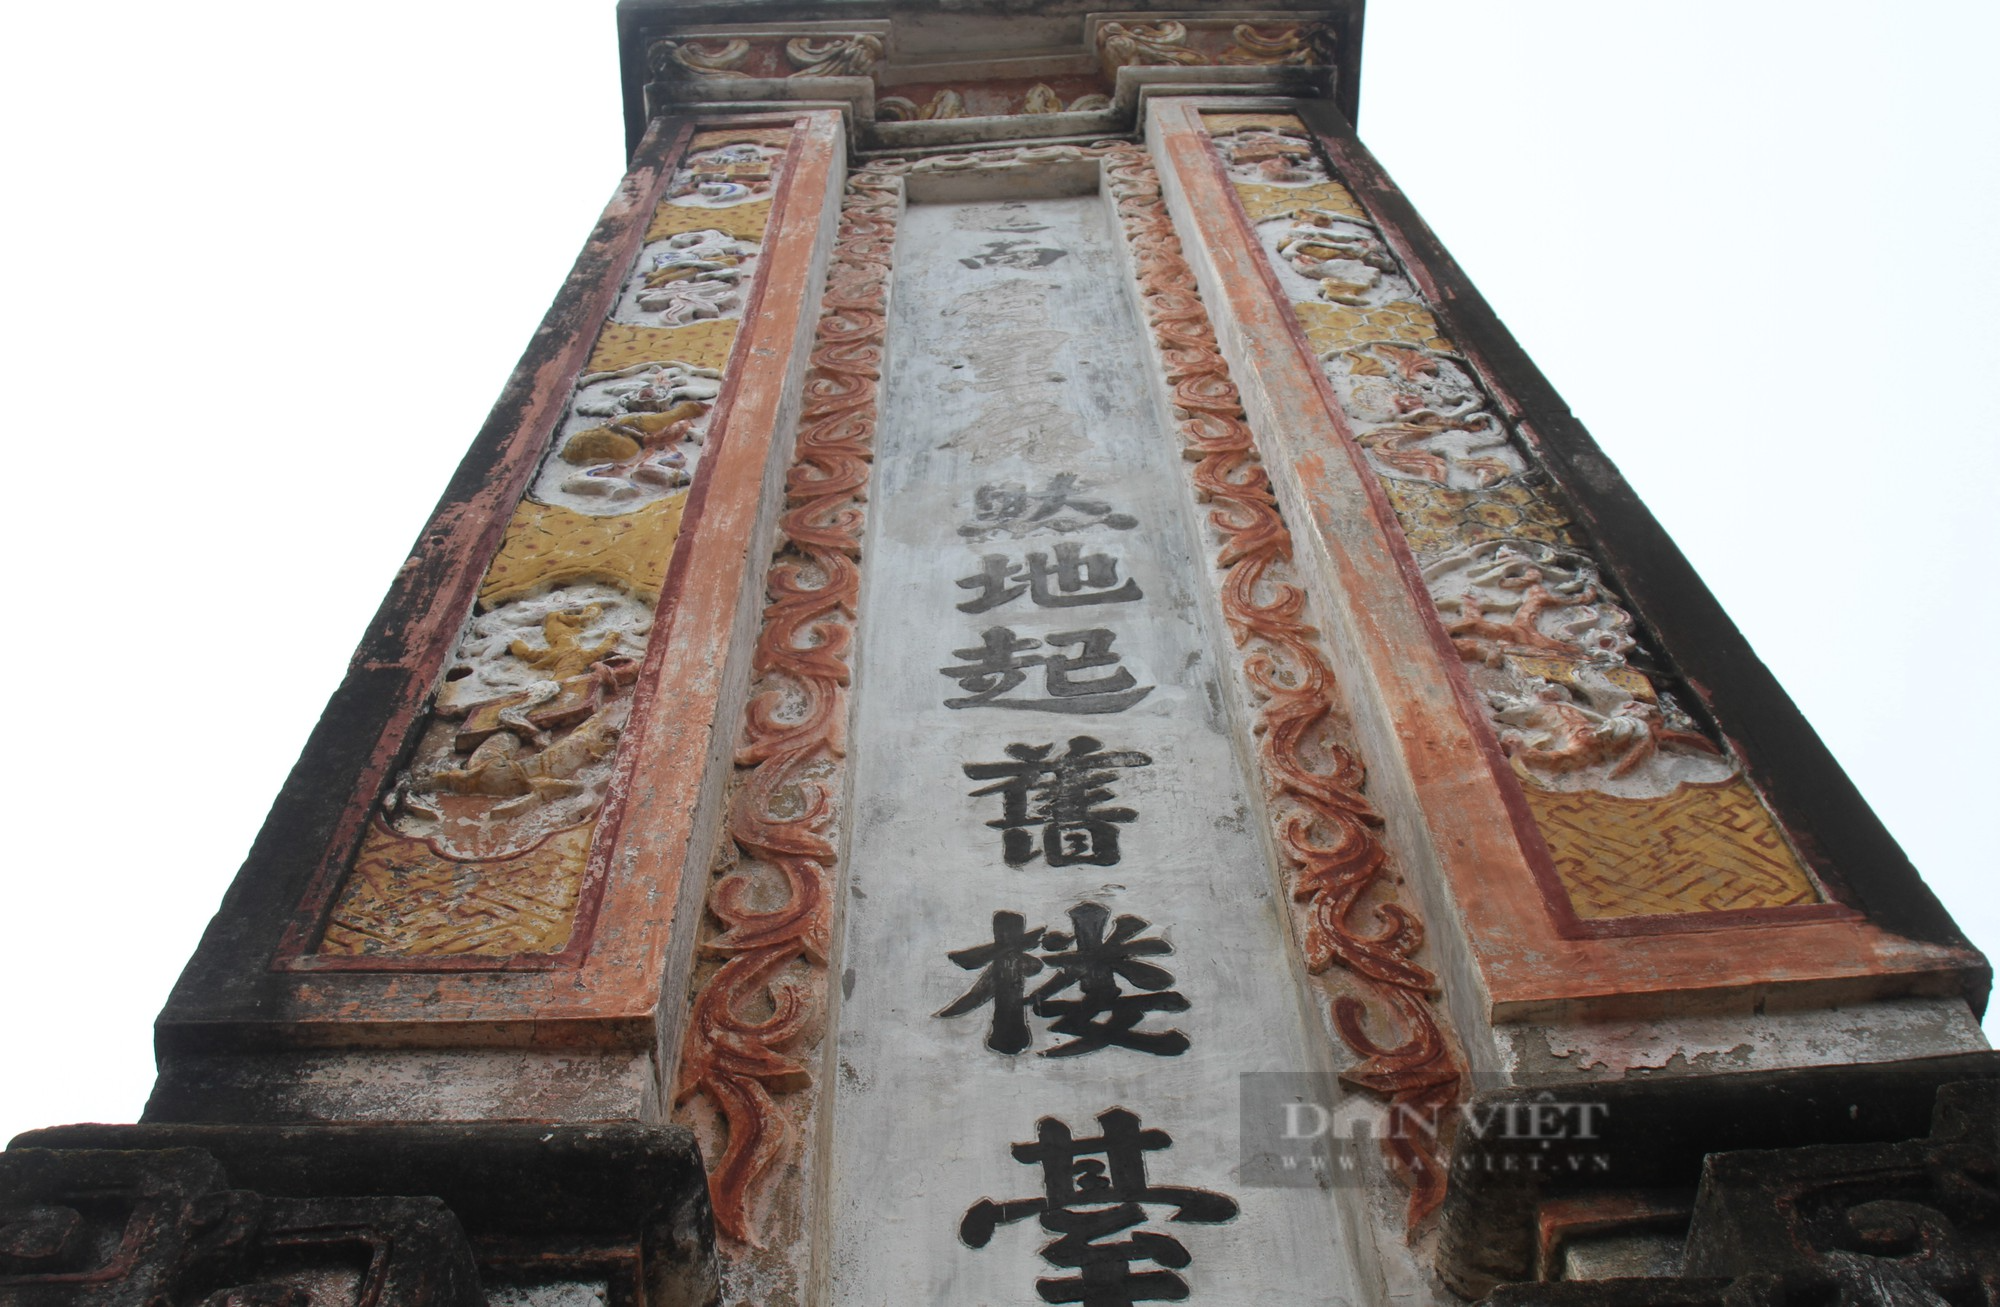 Ngôi đền hơn 550 năm tuổi thờ vị tướng từng vào sinh ra tử với vua Lê Lợi, phò trợ 4 đời vua - Ảnh 5.